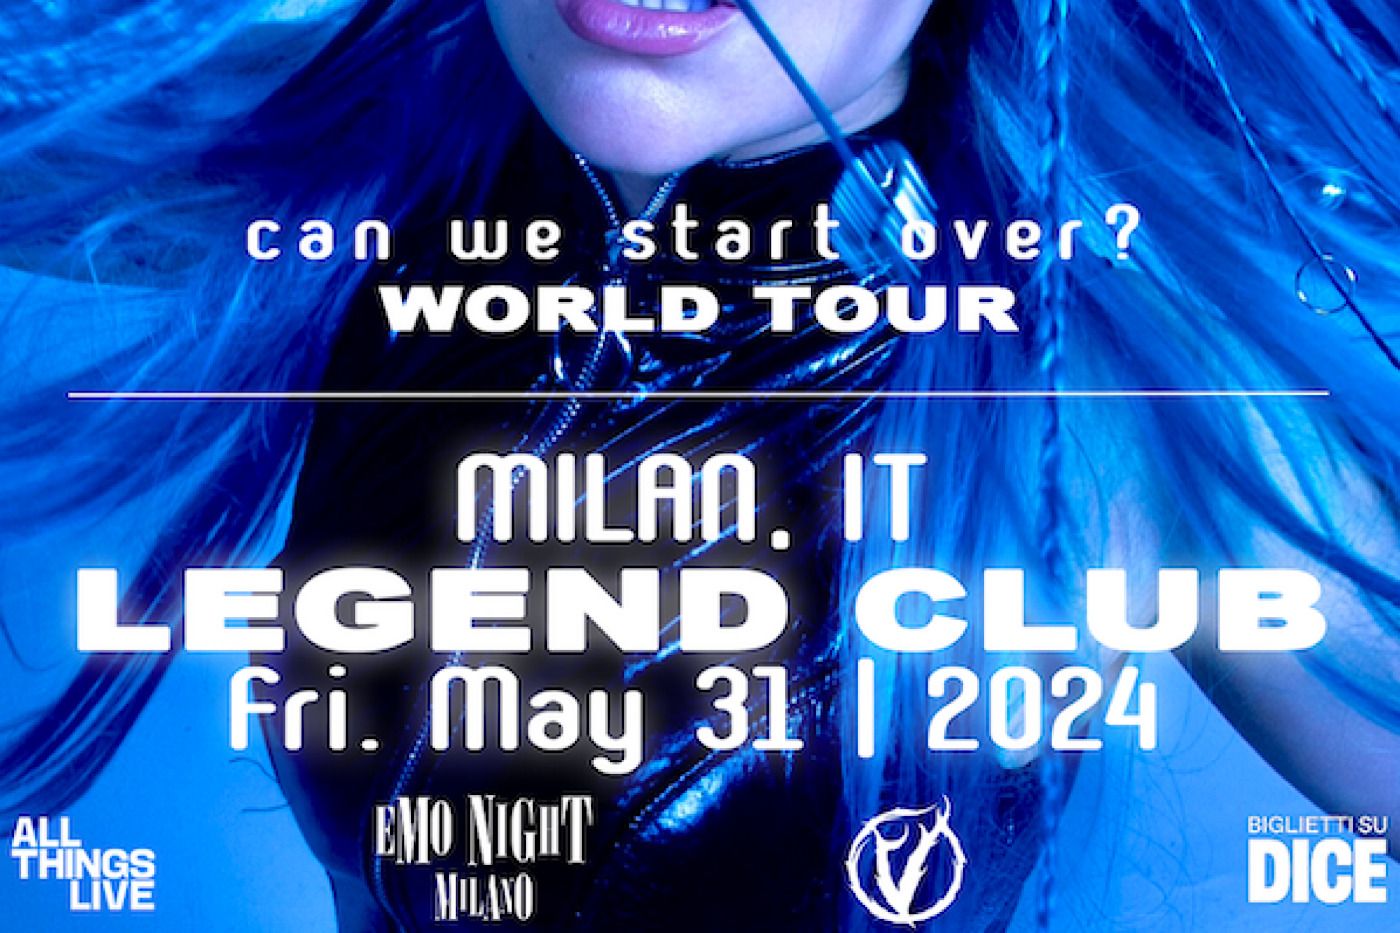 Charlotte Sands – l’artista americana, cresciuta nel segno del pop-punk, arriva in Italia in occasione del tour mondiale il 31.05.24 al Legend di Milano